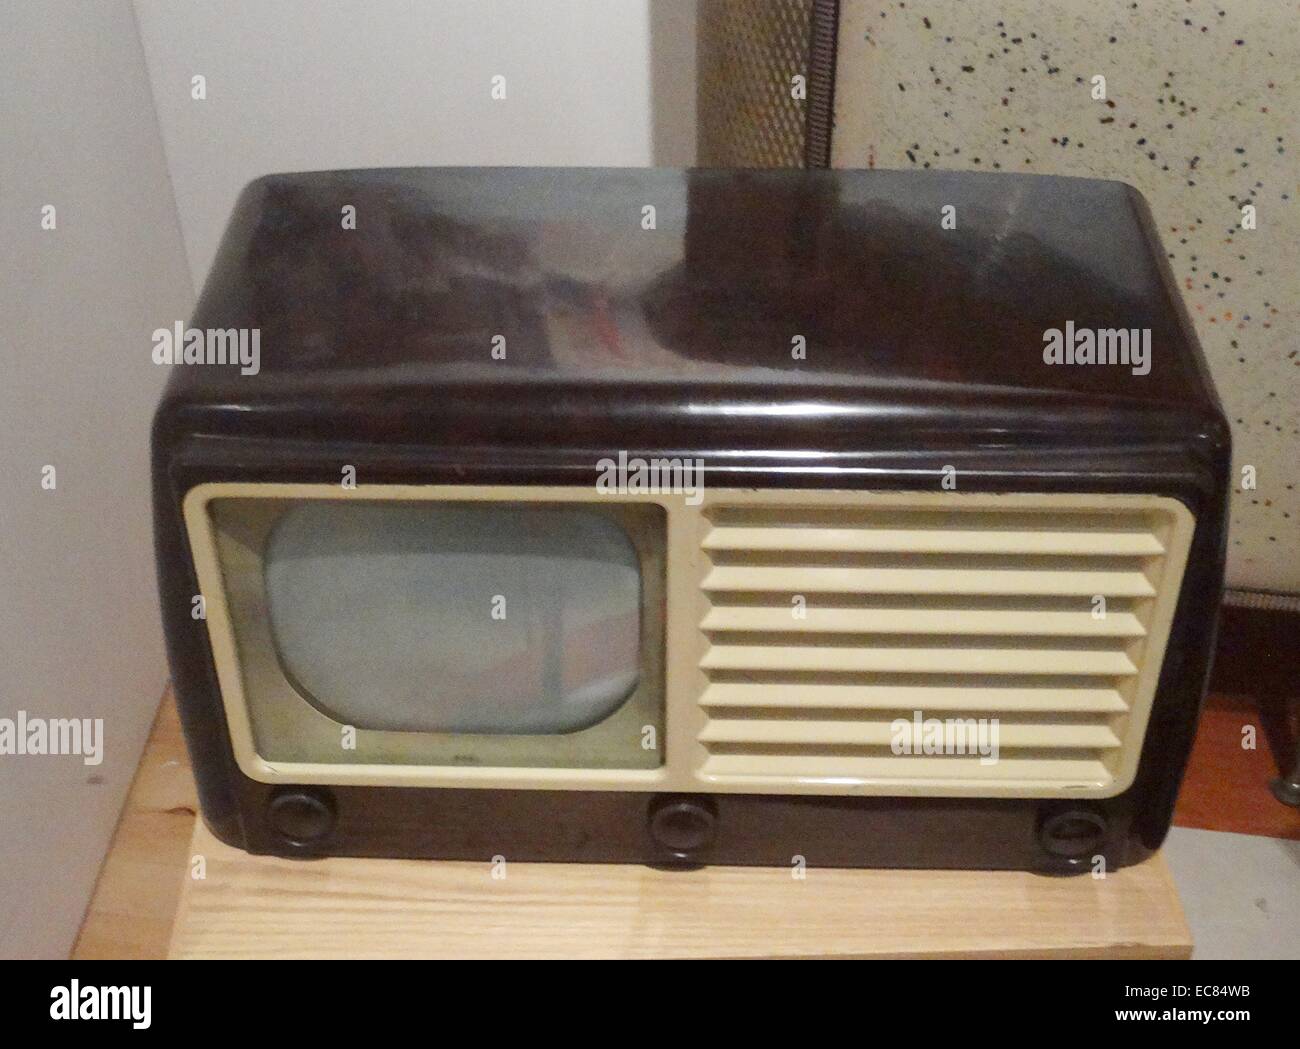 Englisch machte einzelne Station, die Fernseher ab 1949 Stockfotografie -  Alamy